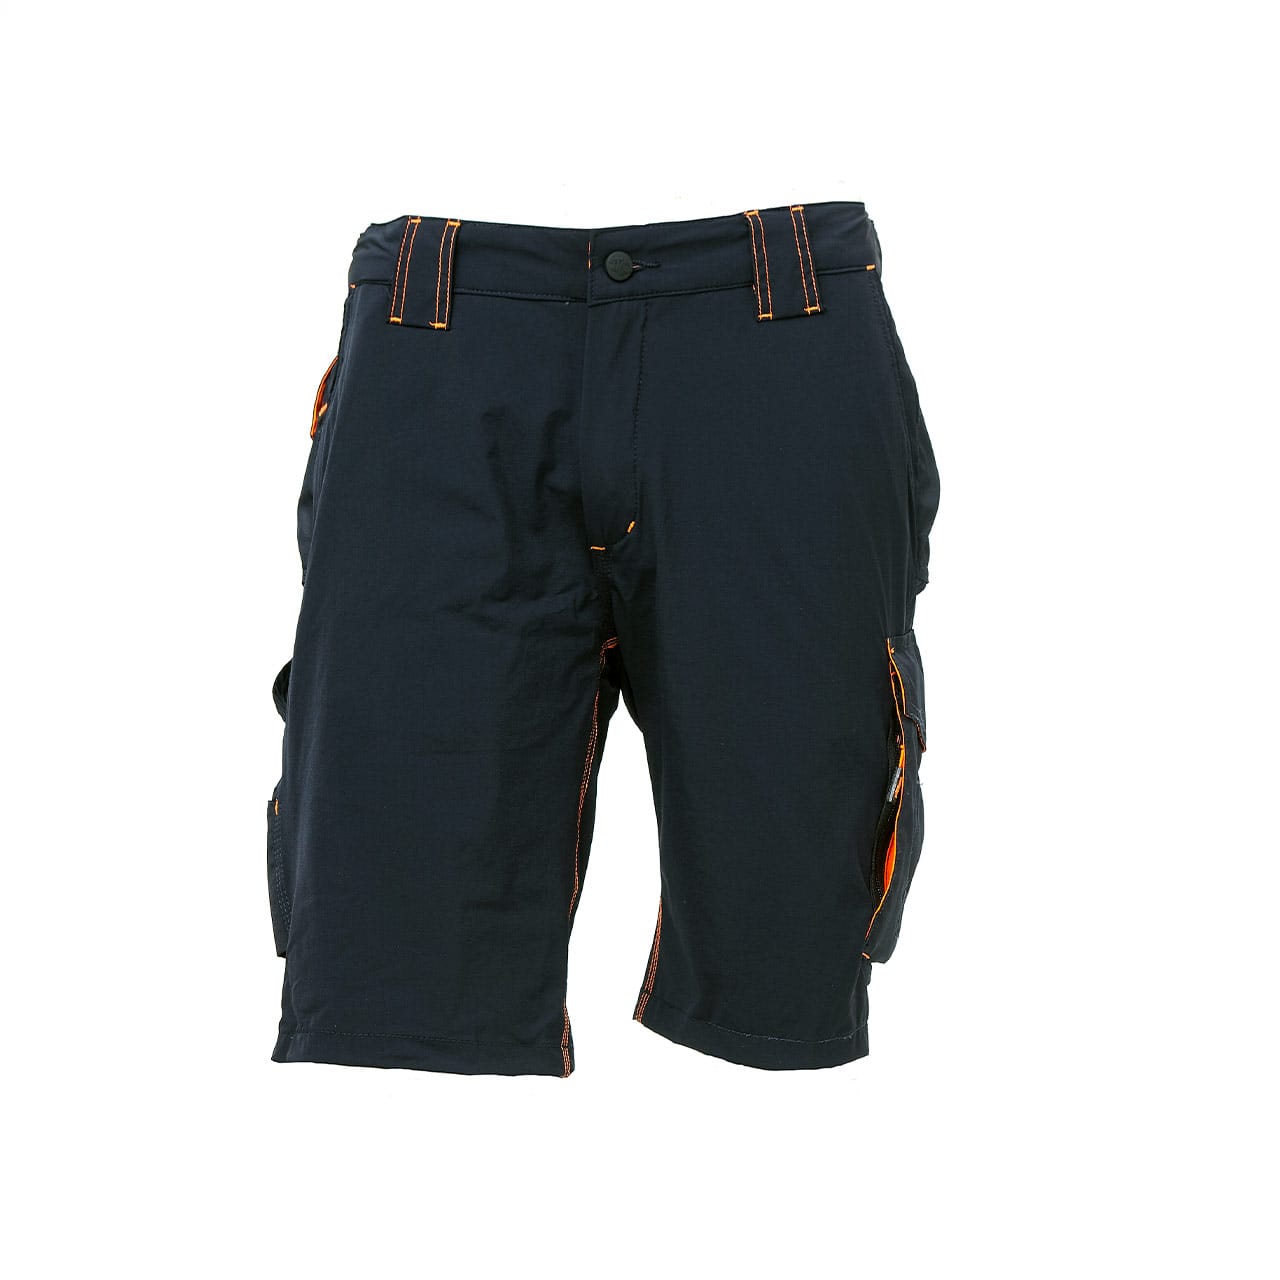 Dassy ® MONZA Pantaloni Corti Shorts Bermuda due colori multi-tasche shorts da uomo 